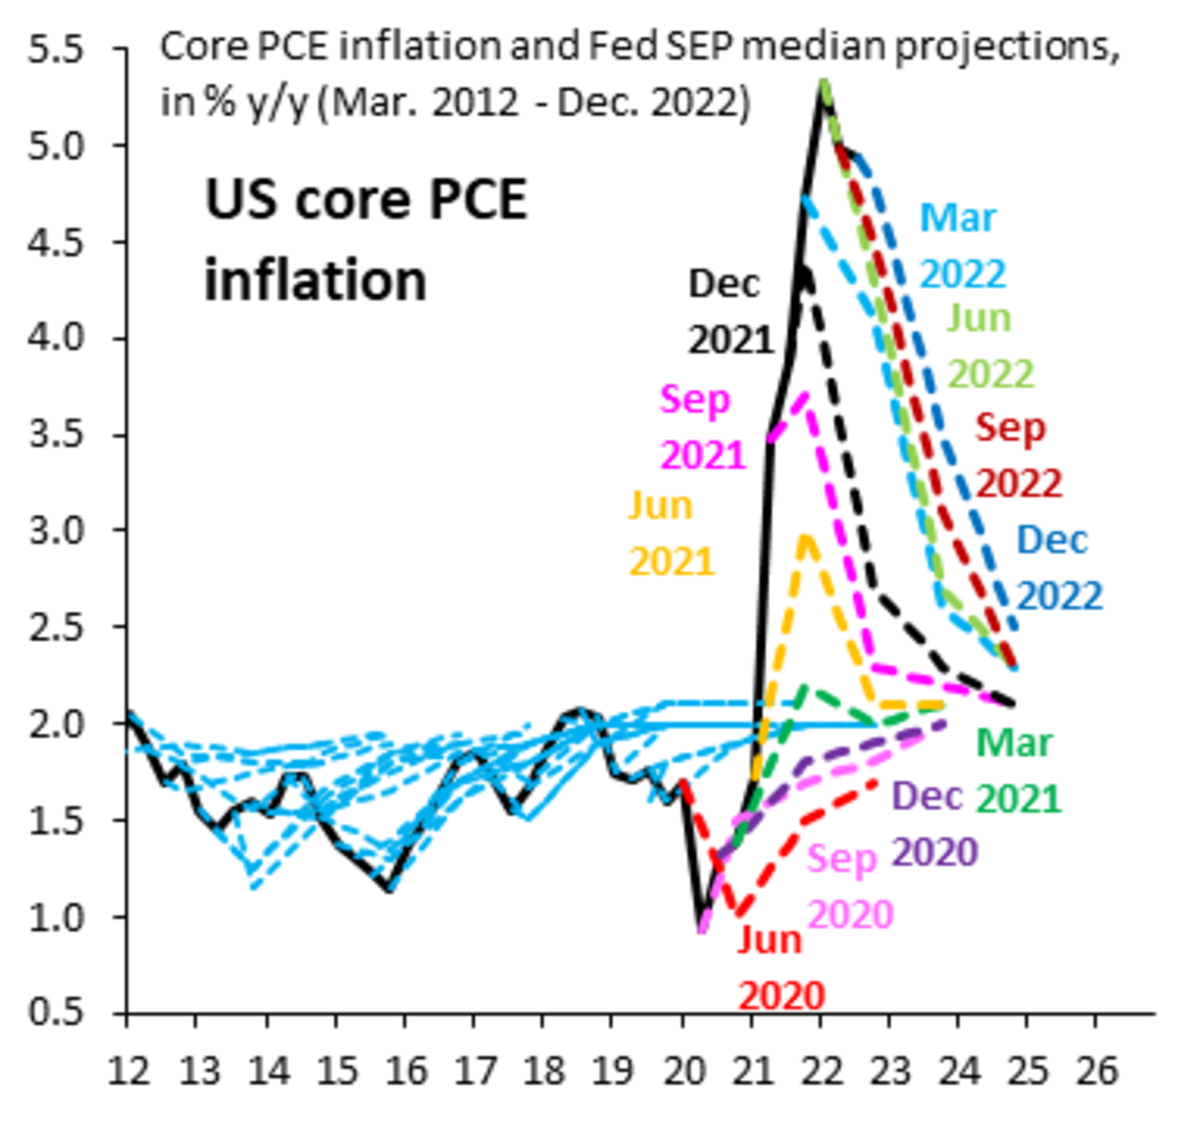 Markedet er næsten enstemmigt i at forvente en renteforhøjelse på 0.25 % under februars FOMC-møde, men mange forventer en "pause" kort derefter. Vi beder om at være anderledes.